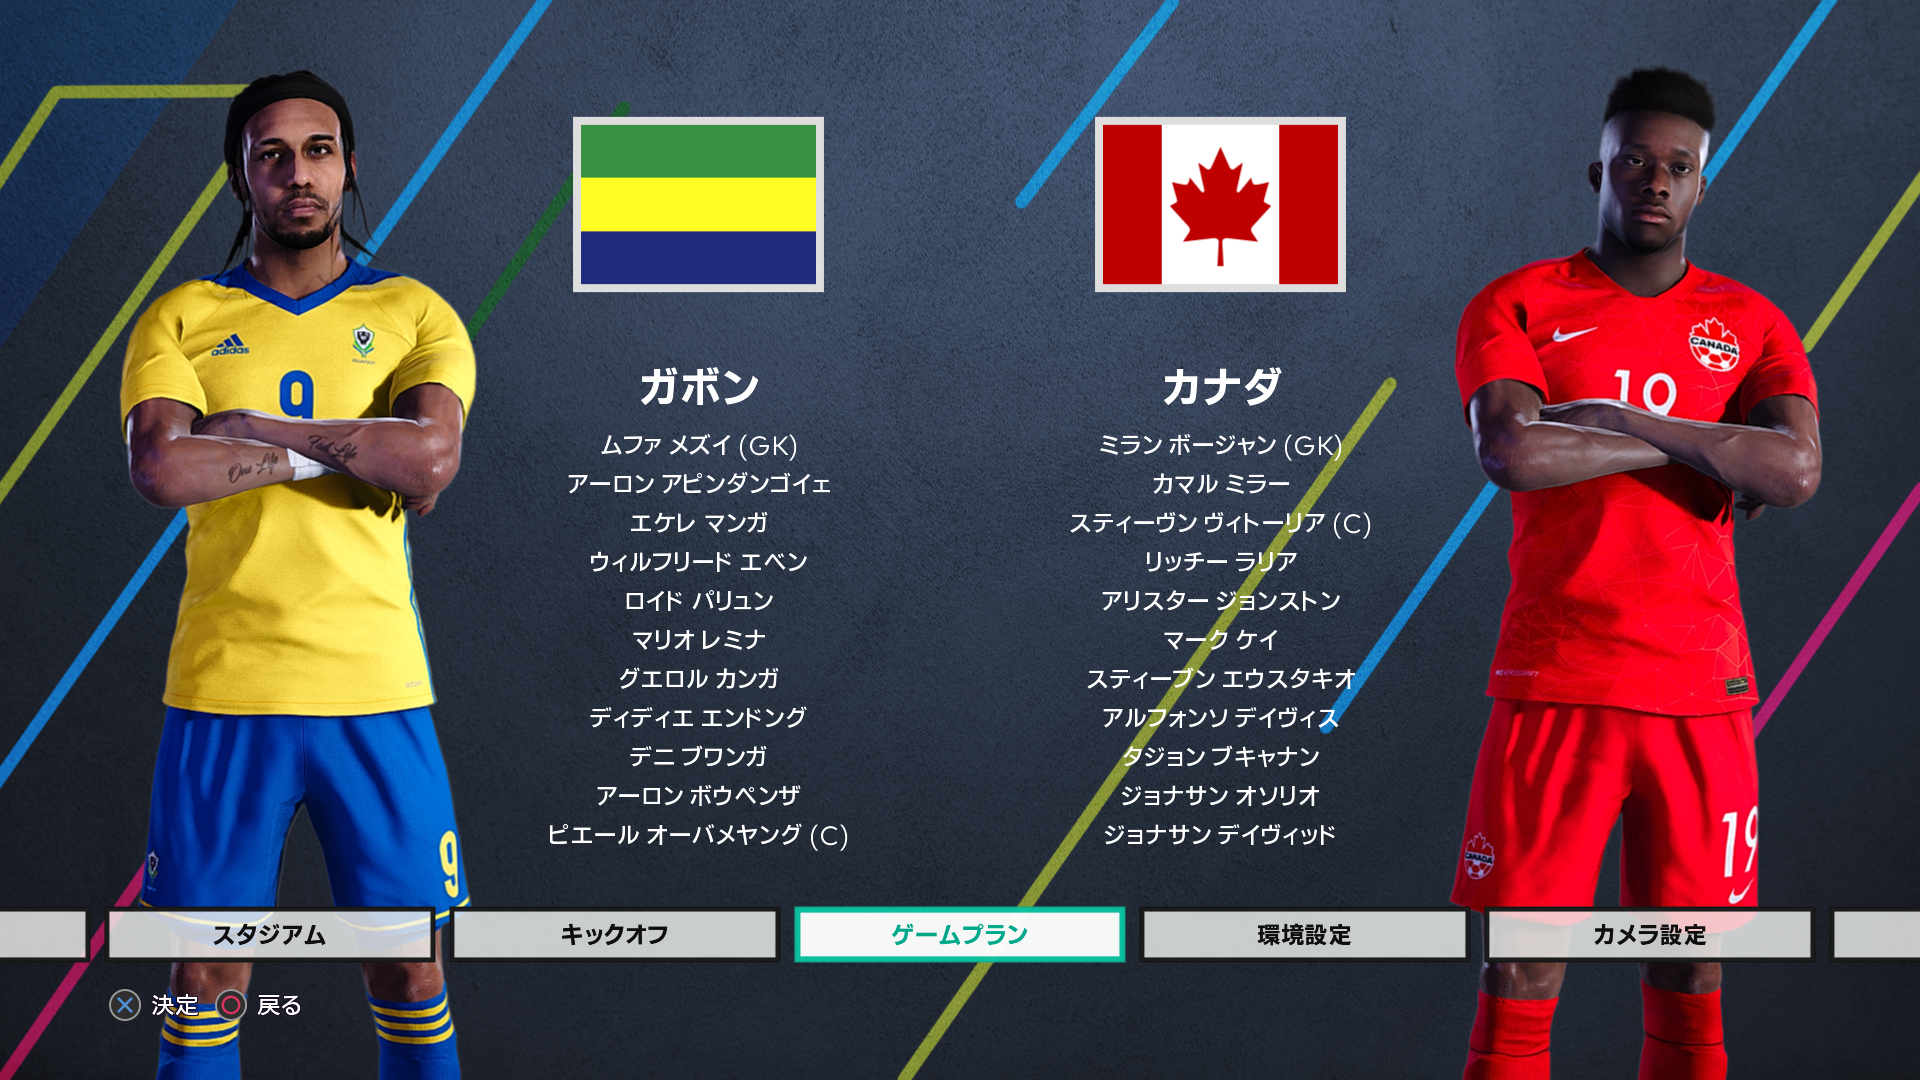 JAPAN EDITION PATCH V3.0 by X. Kano _ National Match Menu 2